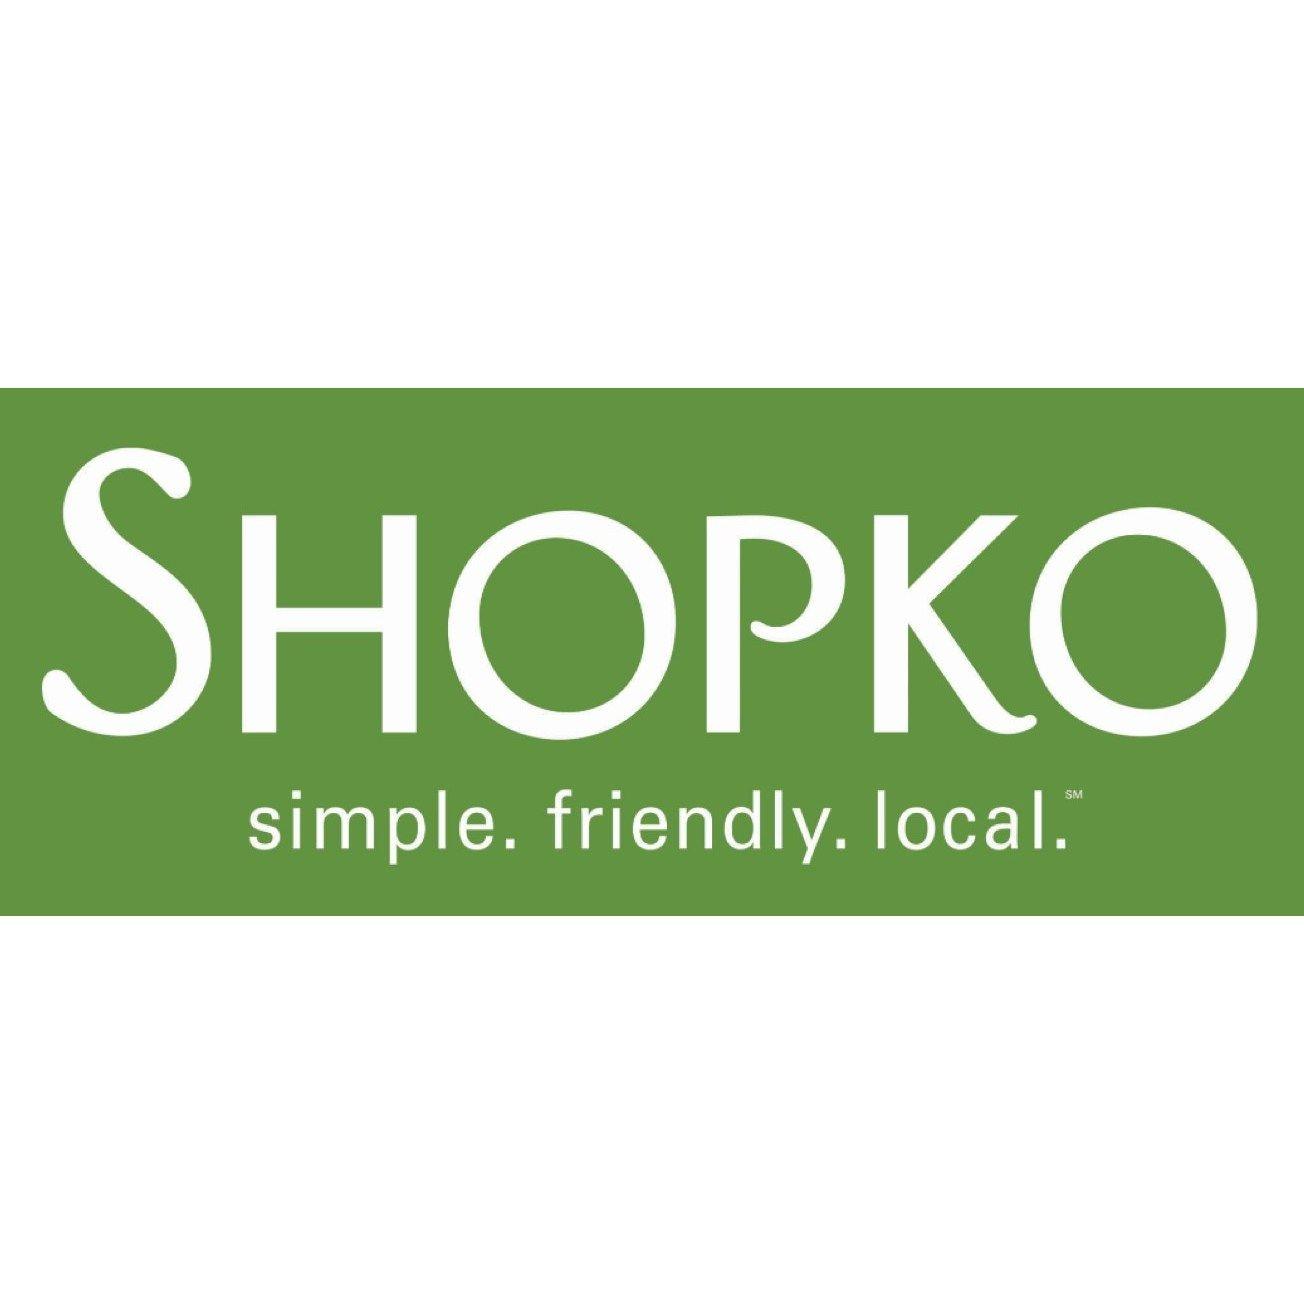 Shopko.com Logo - Shopko Announces Financial Restructuring